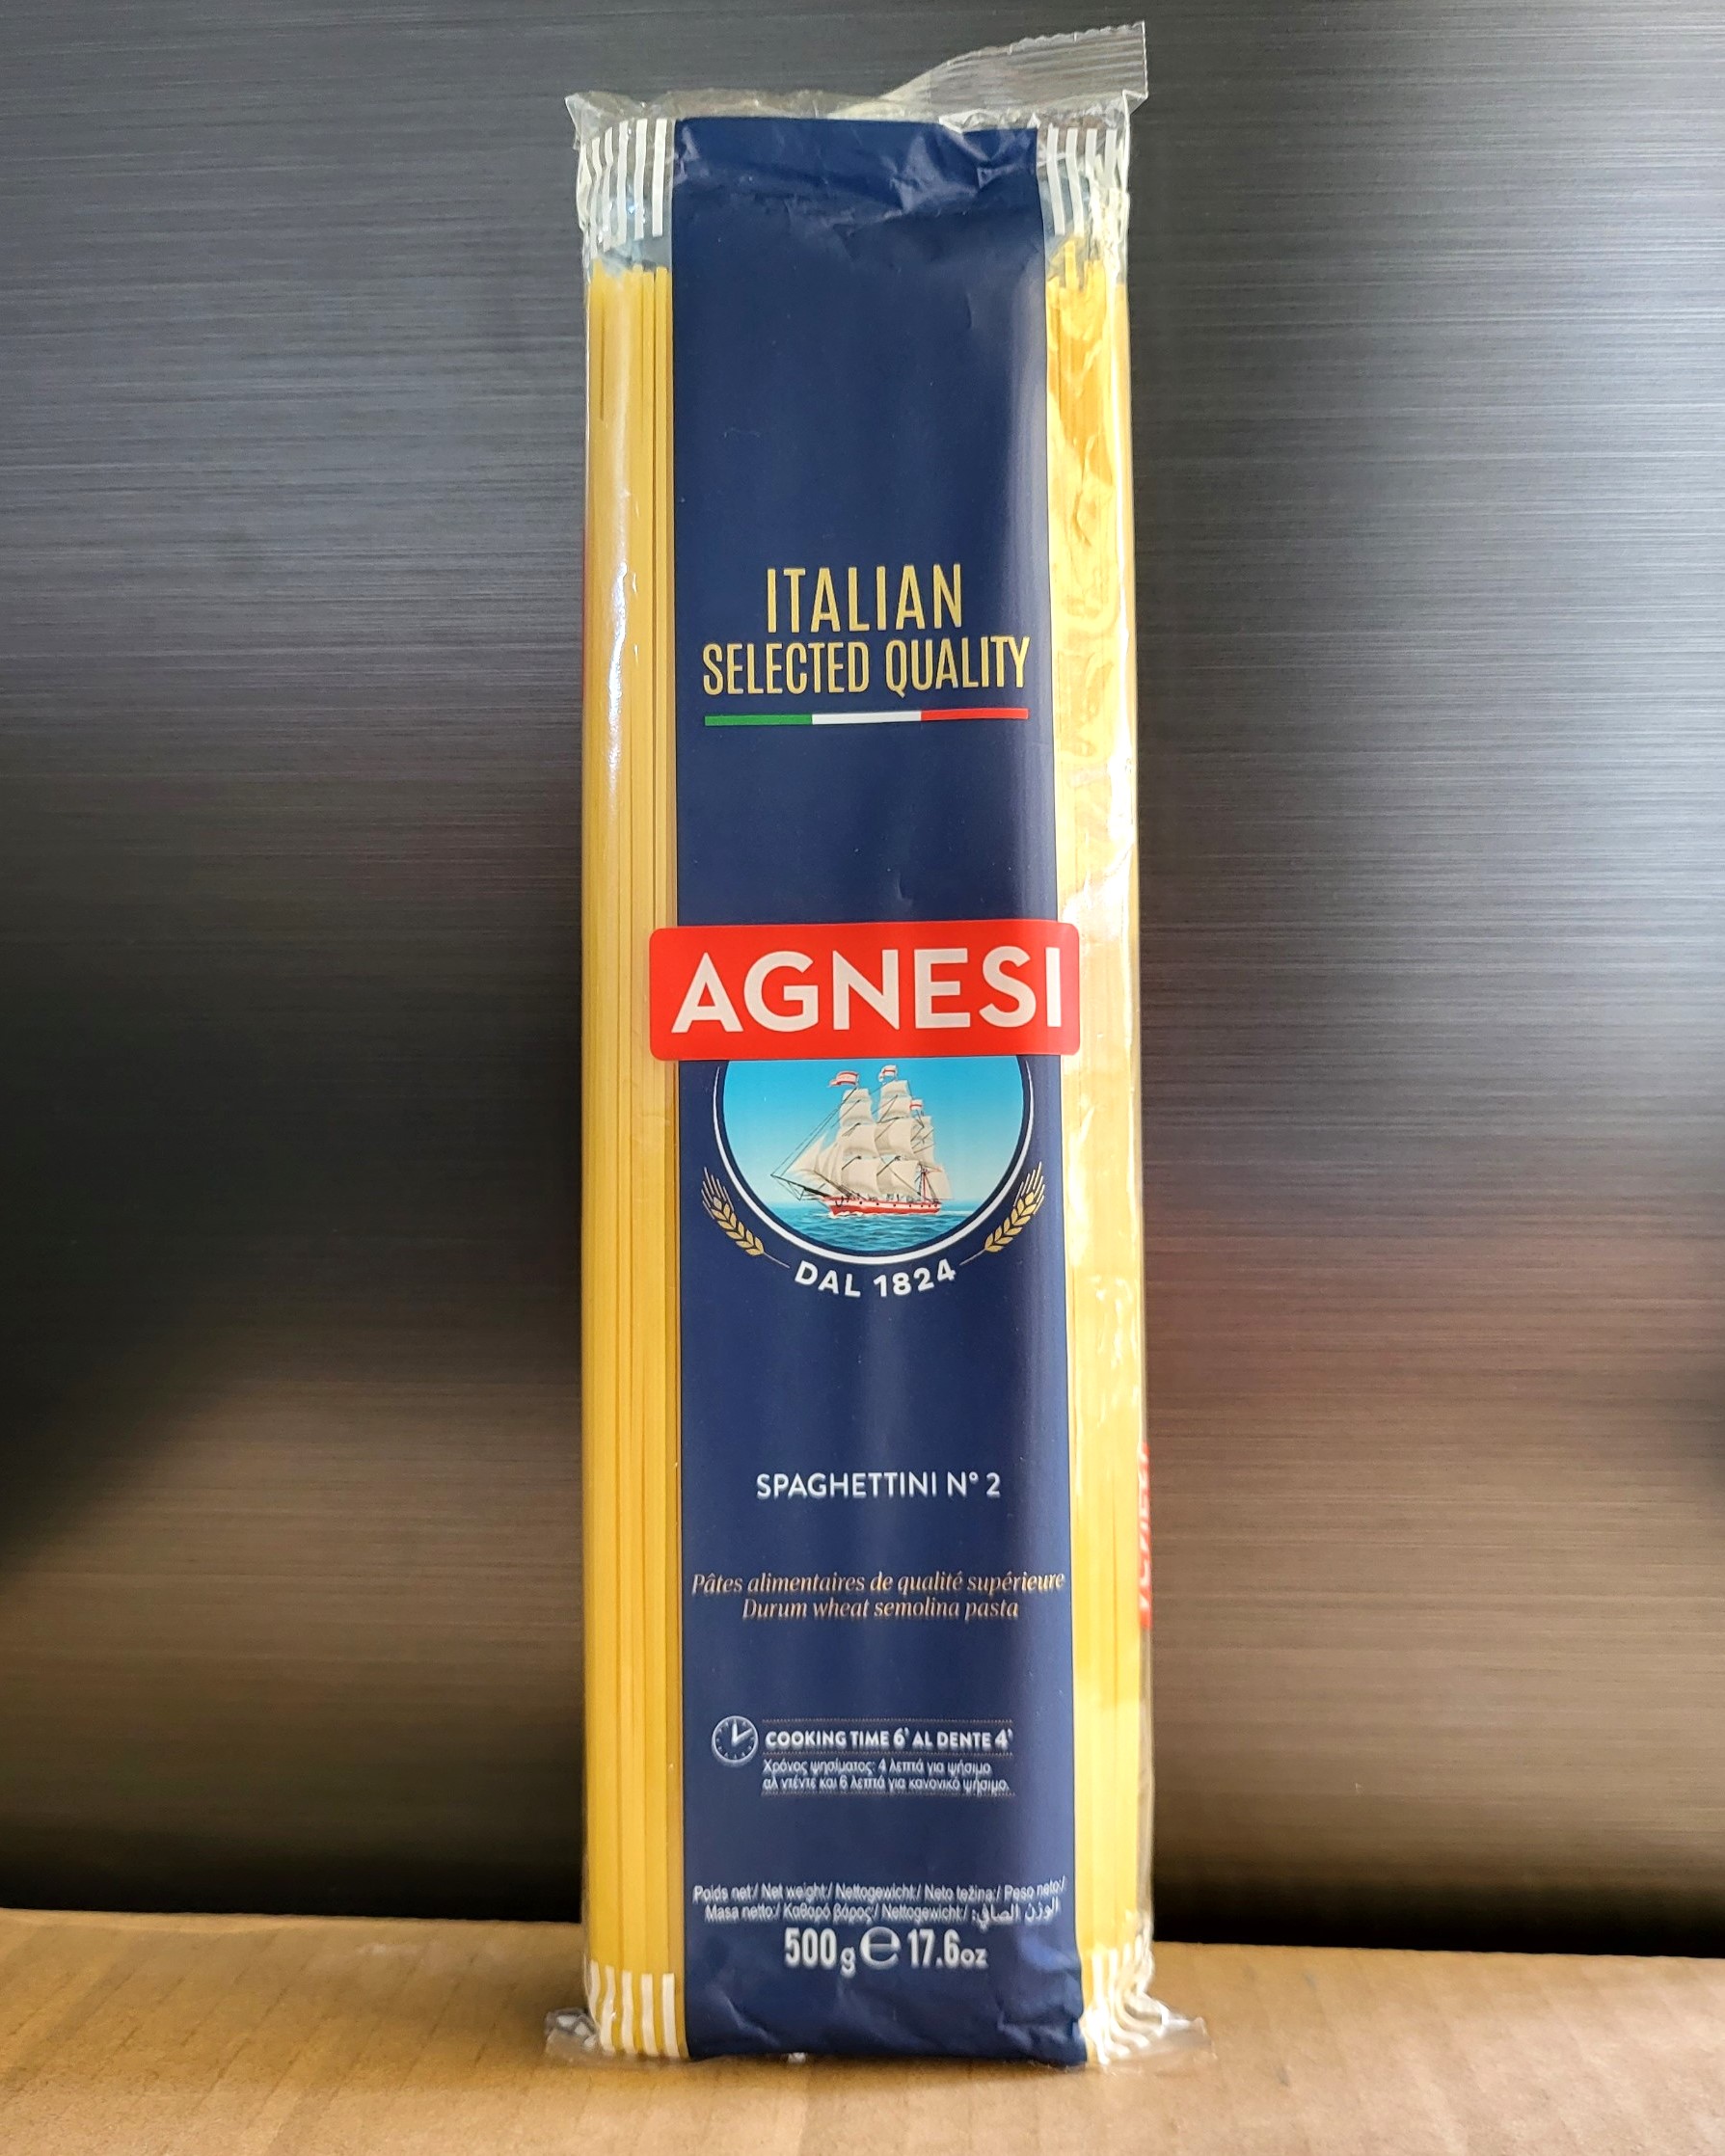 AGNESI - gói 500g số 2 - MÌ ỐNG SPAGHETTI Ý No 2 Spaghettini